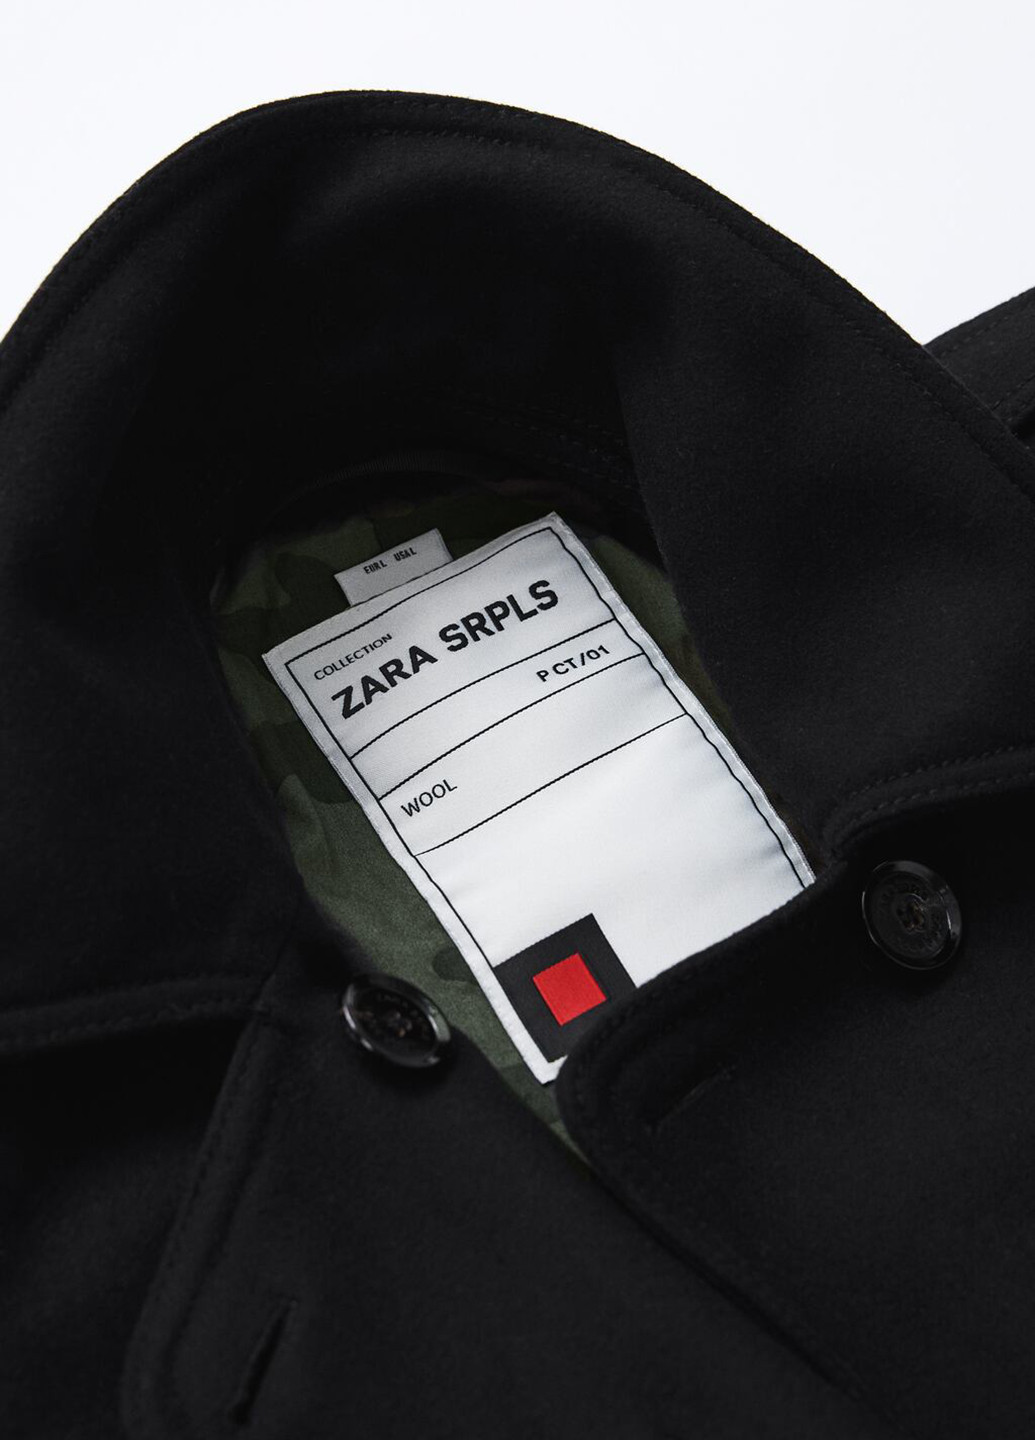 Черное демисезонное Пальто двубортное Zara